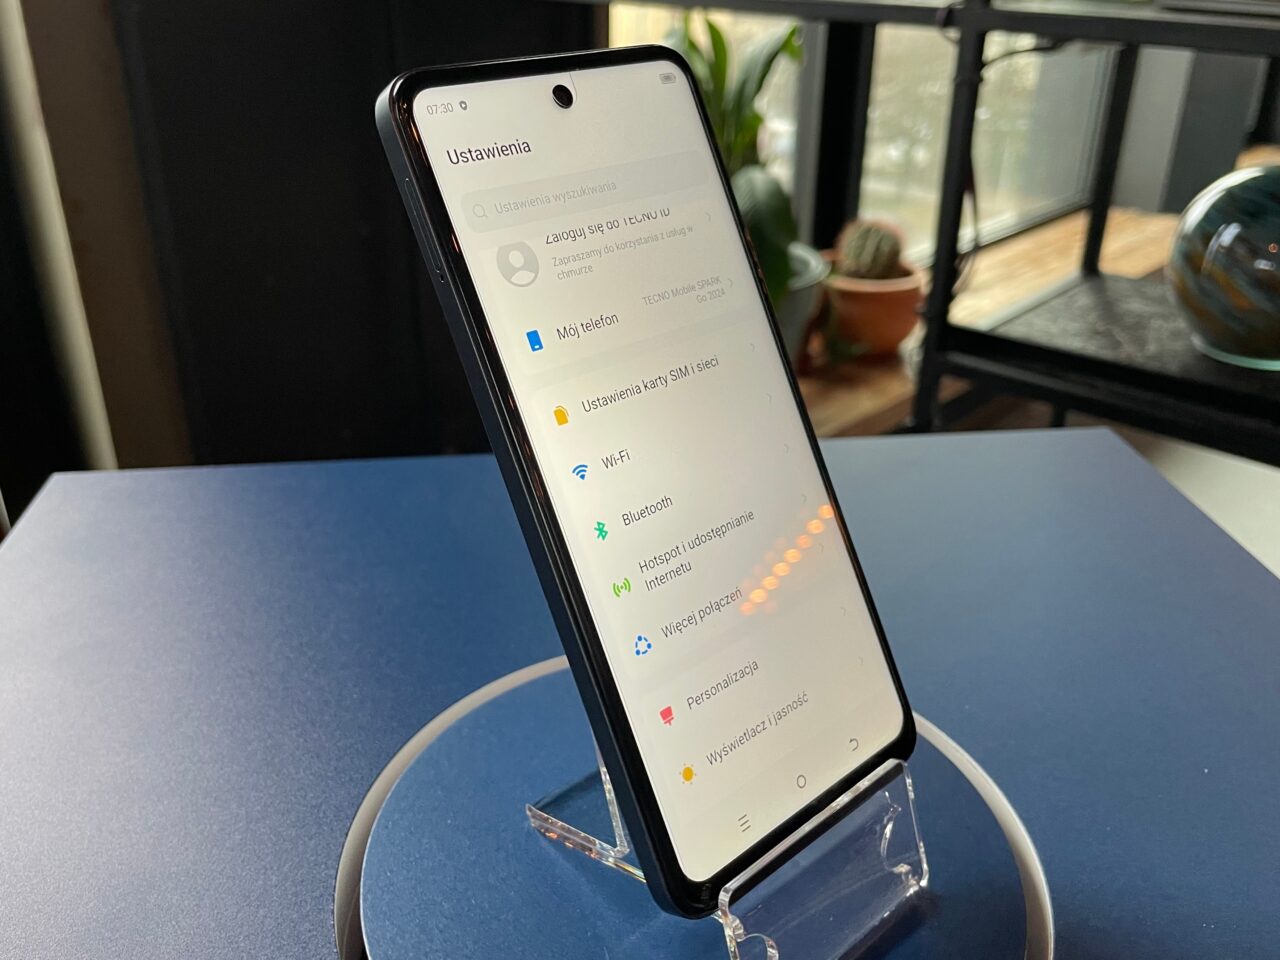 tecno spark go 2024. Smartfon ustawiony pionowo na przezroczystym stojaku, wyświetlający menu ustawień w języku polskim z zaznaczoną opcją baterii i wyświetlania, na tle wnętrza.